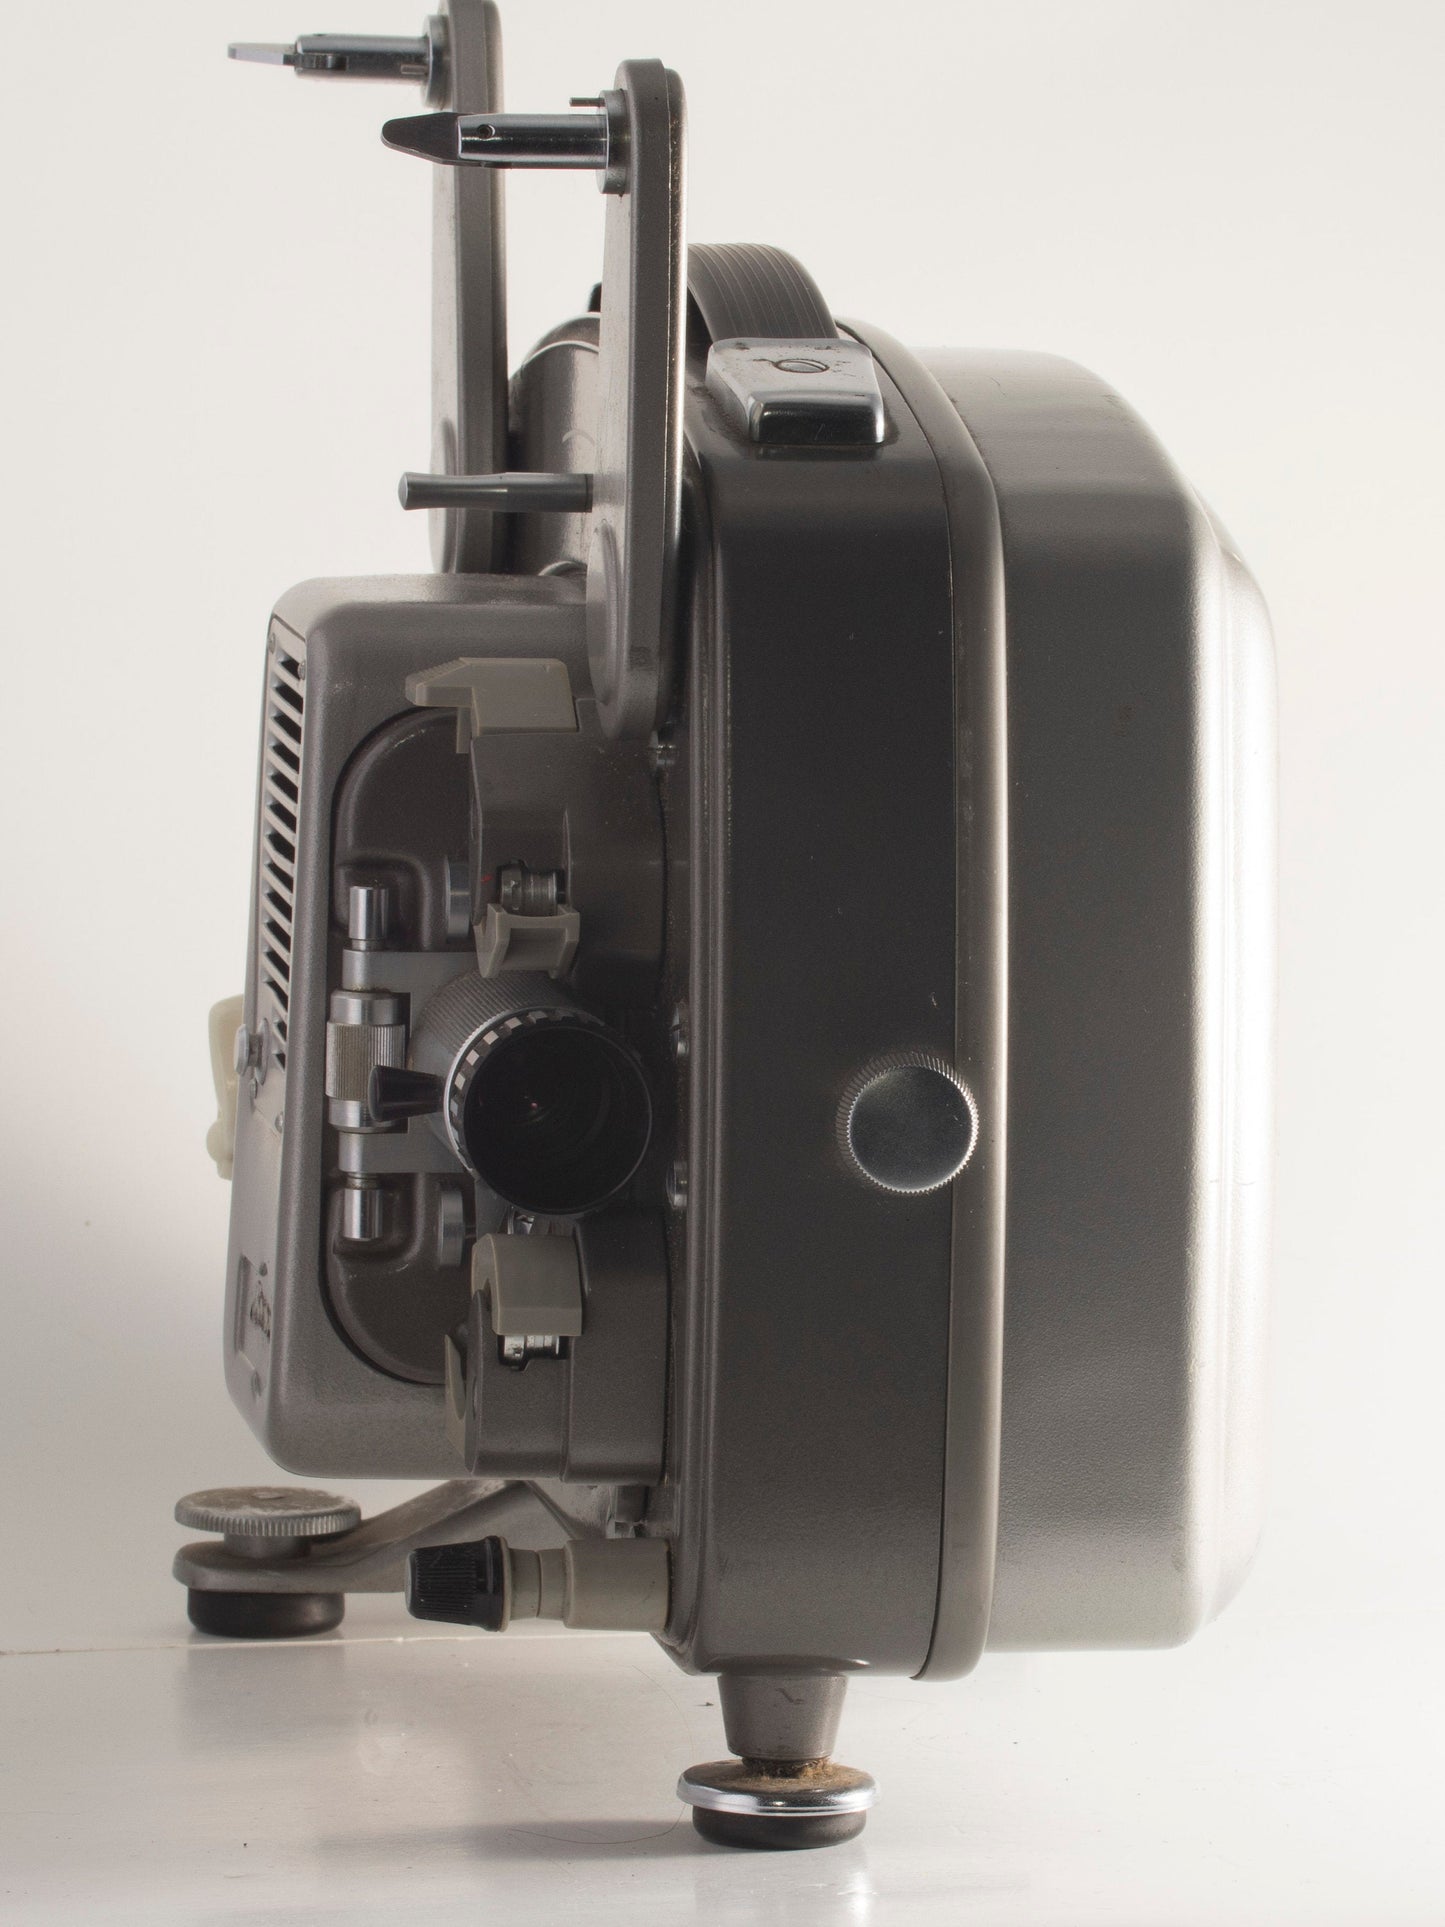 Paillard Bolex 18-5 8mm movie projector